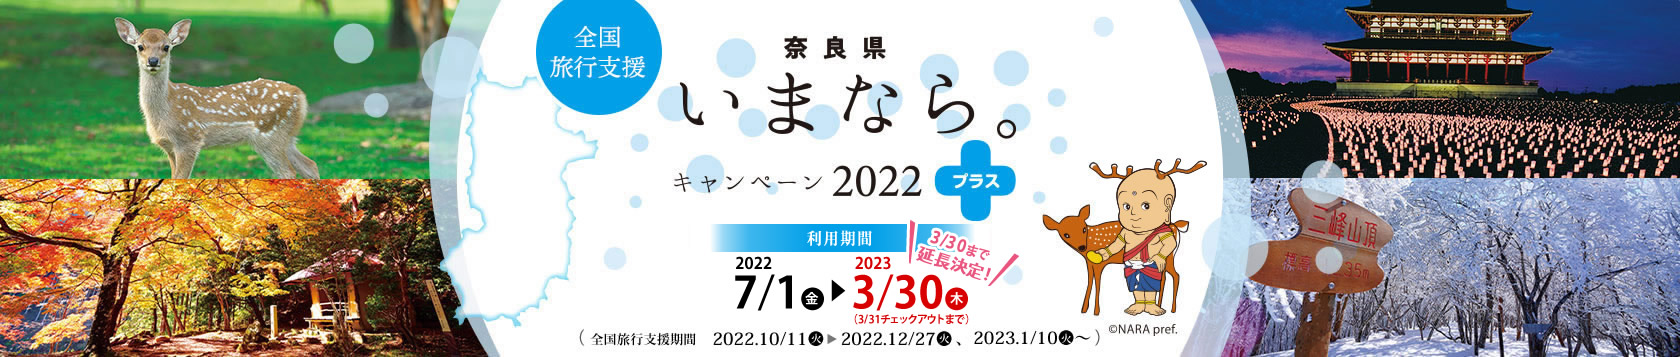 【奈良県】奈良県民限定「いまなら。キャンペーン2022プラス」